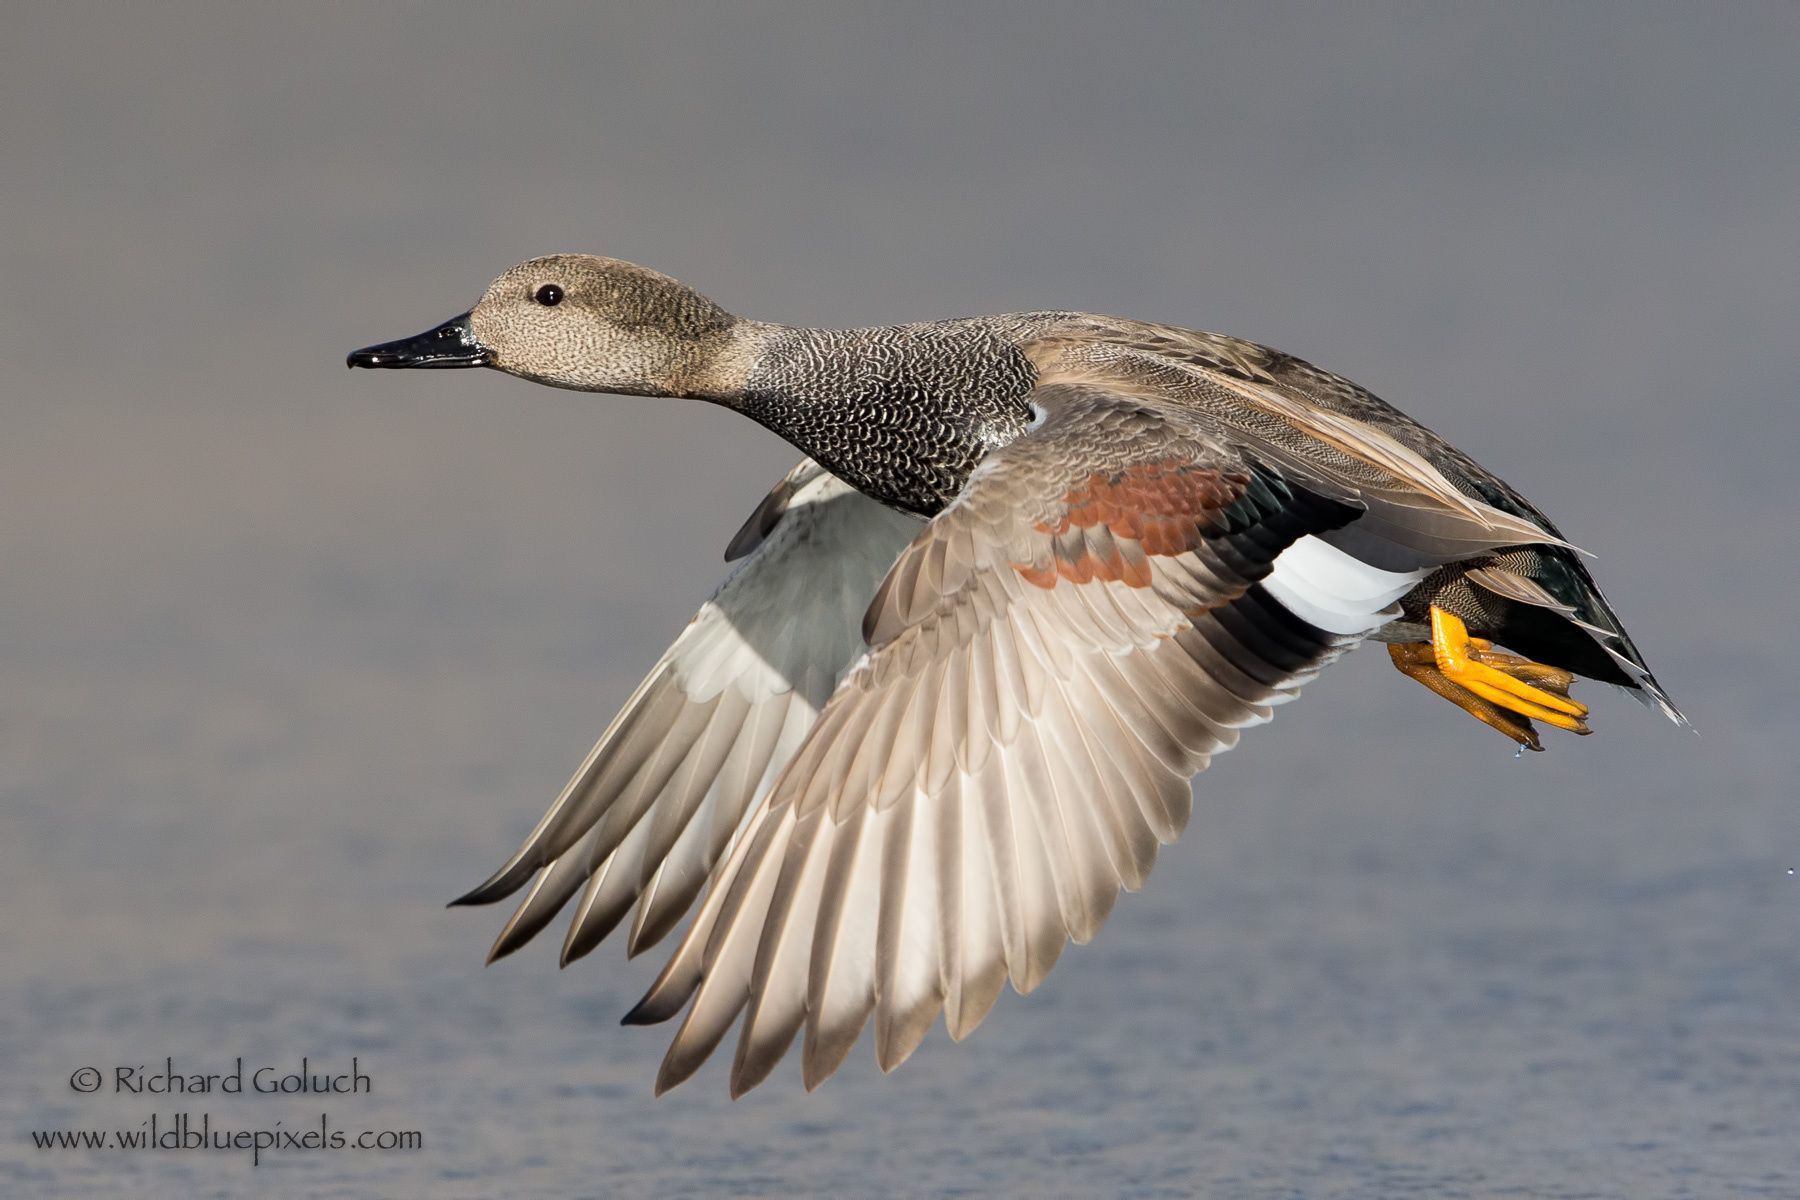 Gadwall duck,drake in flight. | Aves Galloanserae - Fowl | Pinterest ...